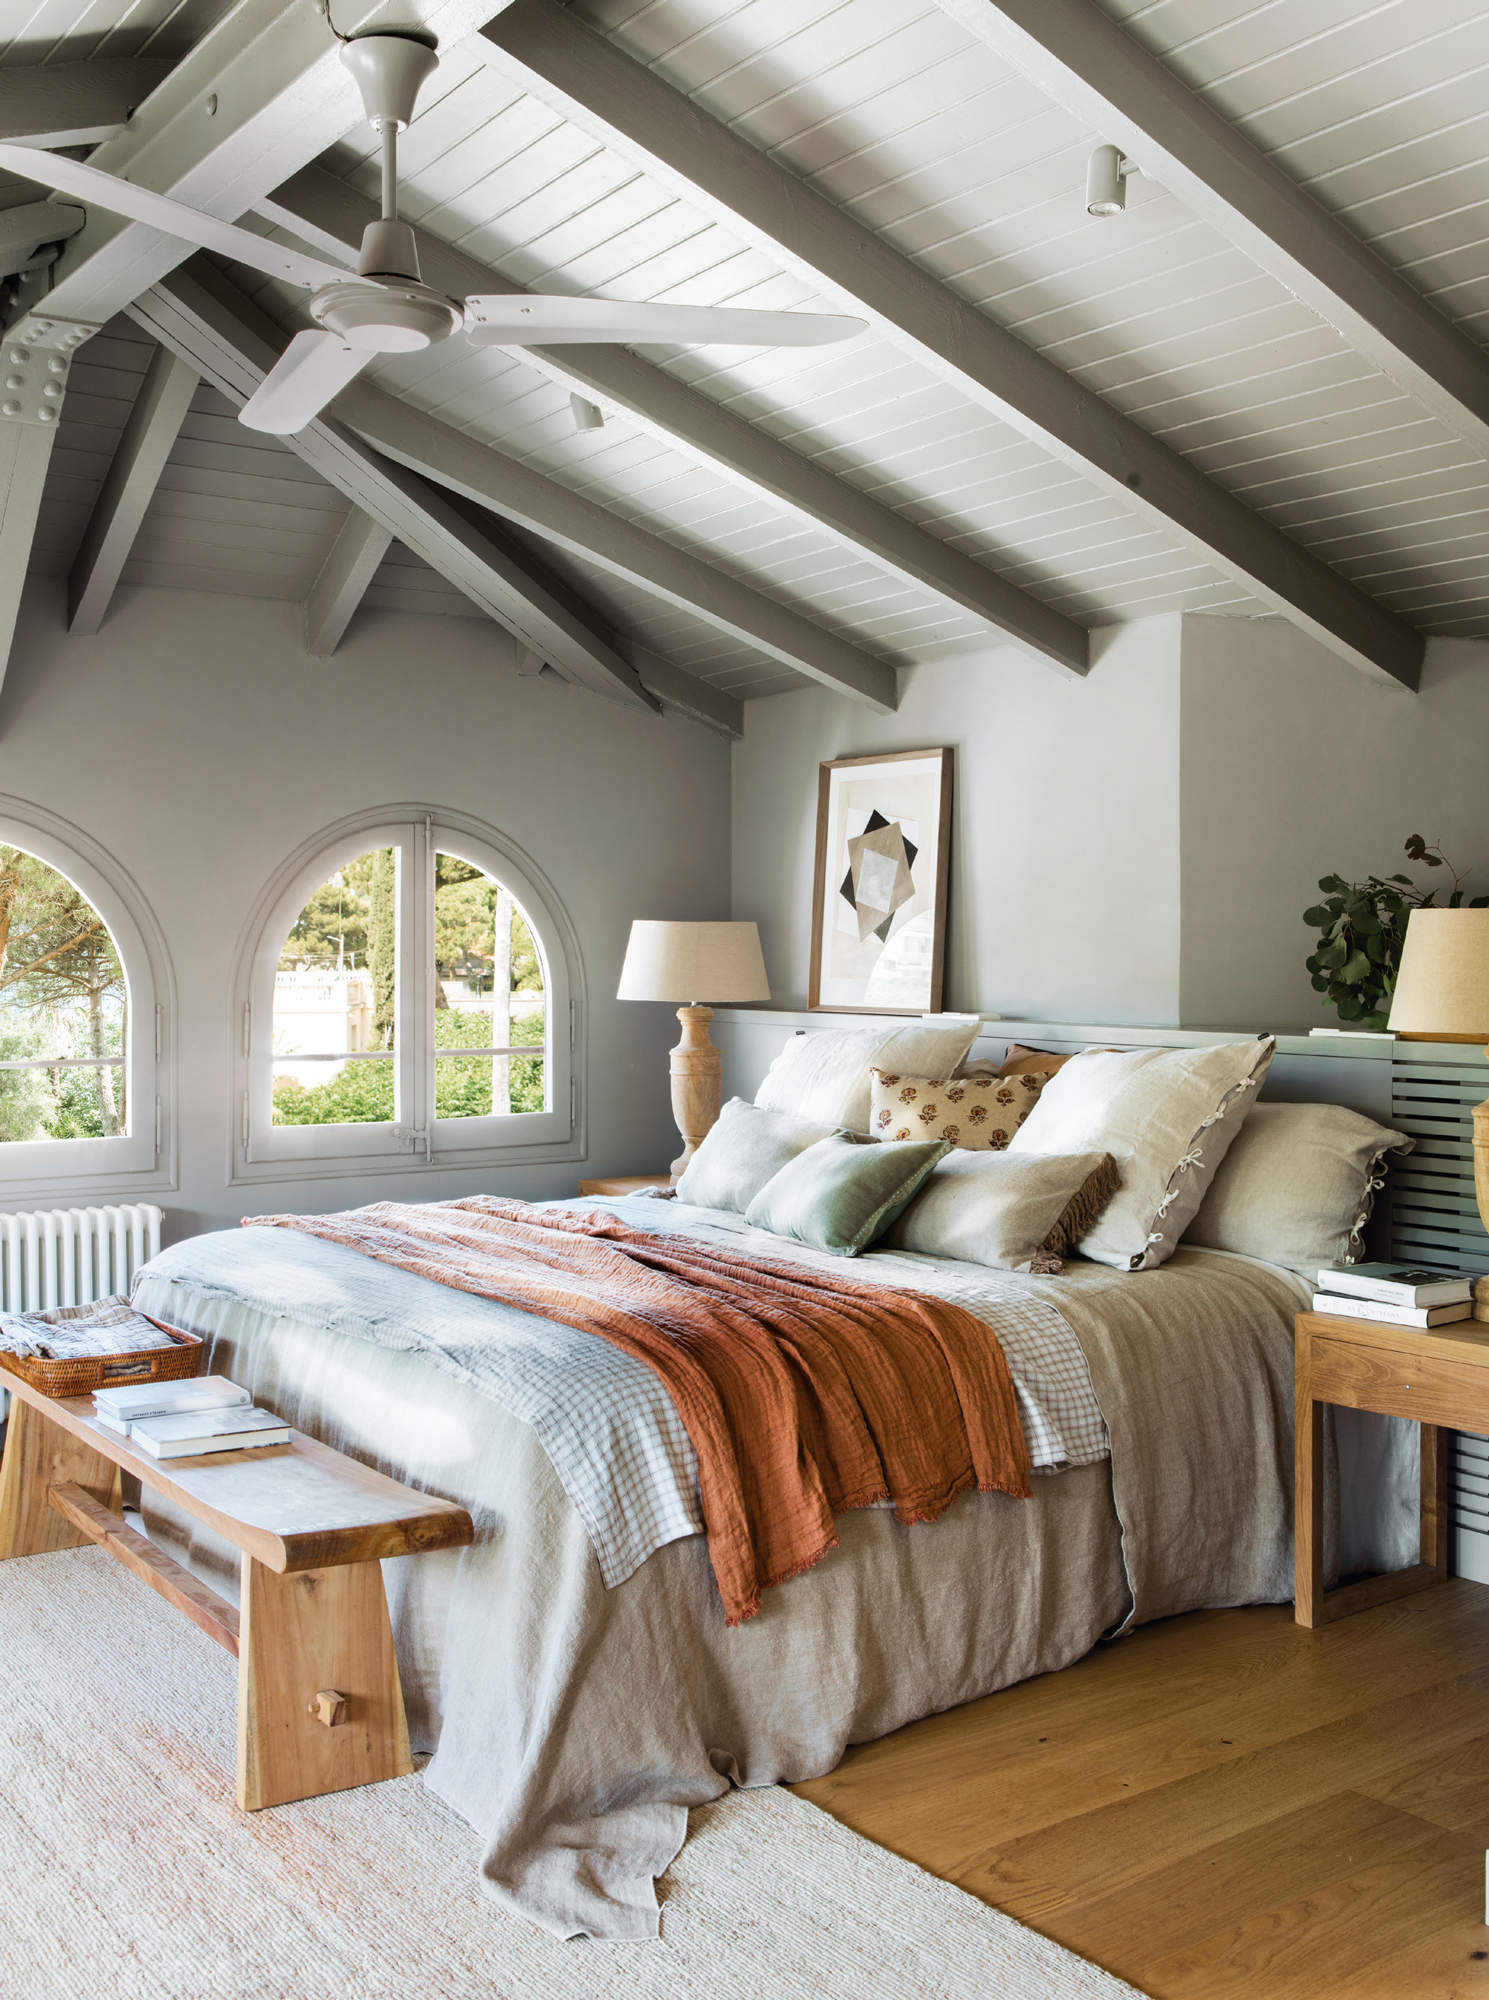 Dormitorio decorado en tonos grises, con ropa de cama en tonos tierra, y vigas a la vista.